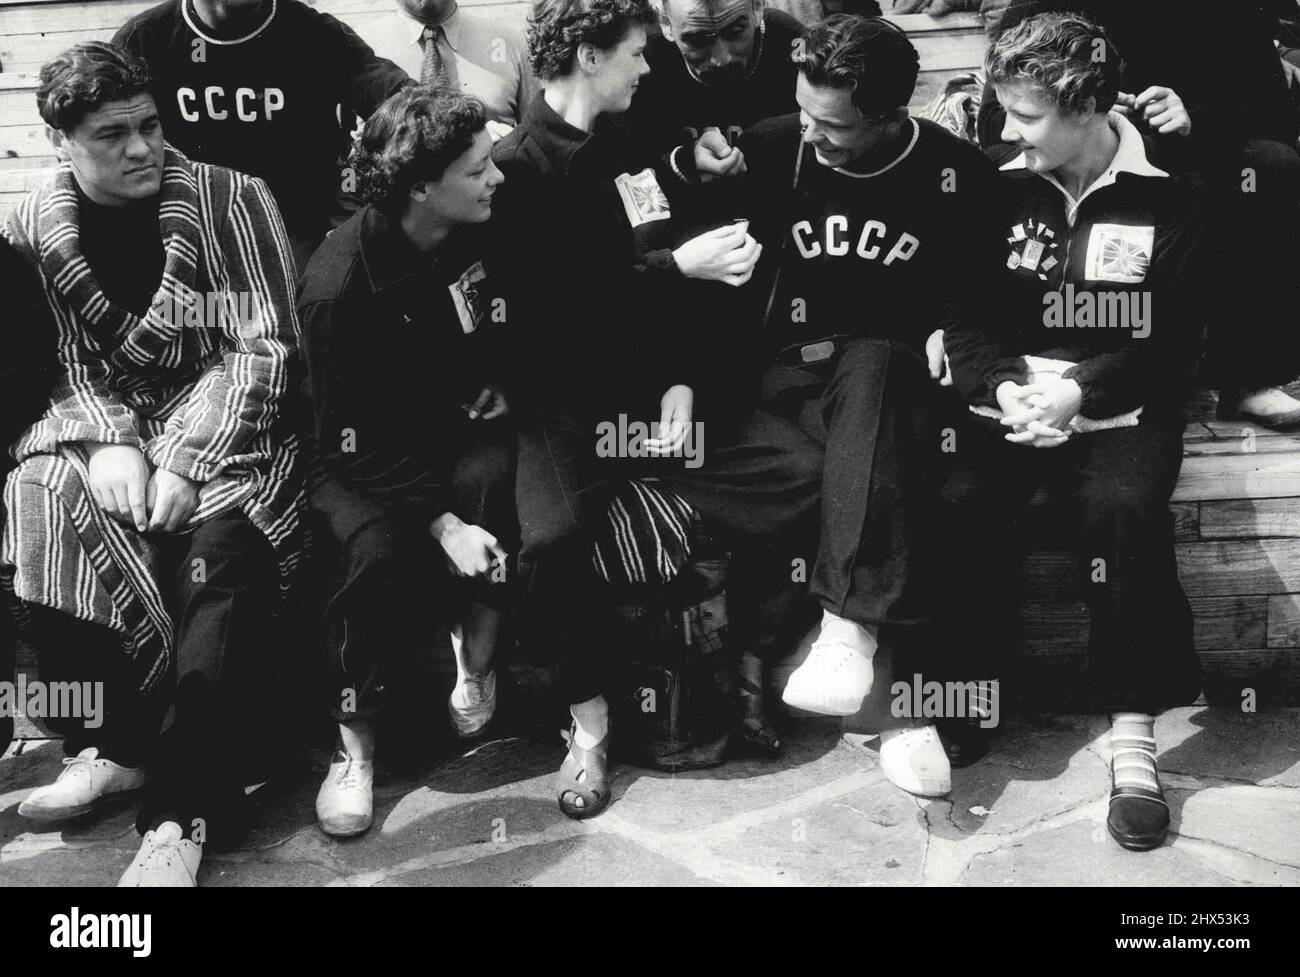 Halsinki Badge-Swappers: Badge-Swapping am olympischen Pool. Von links nach rechts: Die 15-jährige Pauline Musgrove aus York, jüngstes Mitglied des britischen Teams, Jean Wrigley aus Oldham, Vadim Bubok aus dem russischen Polo-Team, Jean Botham aus Manchester und andere russische Polo-Spieler, die auf sie schauen. Der neueste Wahnpunkt unter den Teilnehmern der Olympischen Spiele in Helsinki ist das Badge-Swapping. Enthusiastische Anhänger der Fad sind die russischen Athleten, die mittlerweile viele ausländische Abzeichen in ihren Sammlungen haben. 23. Juli 1952. (Foto von Paul Popper). Stockfoto